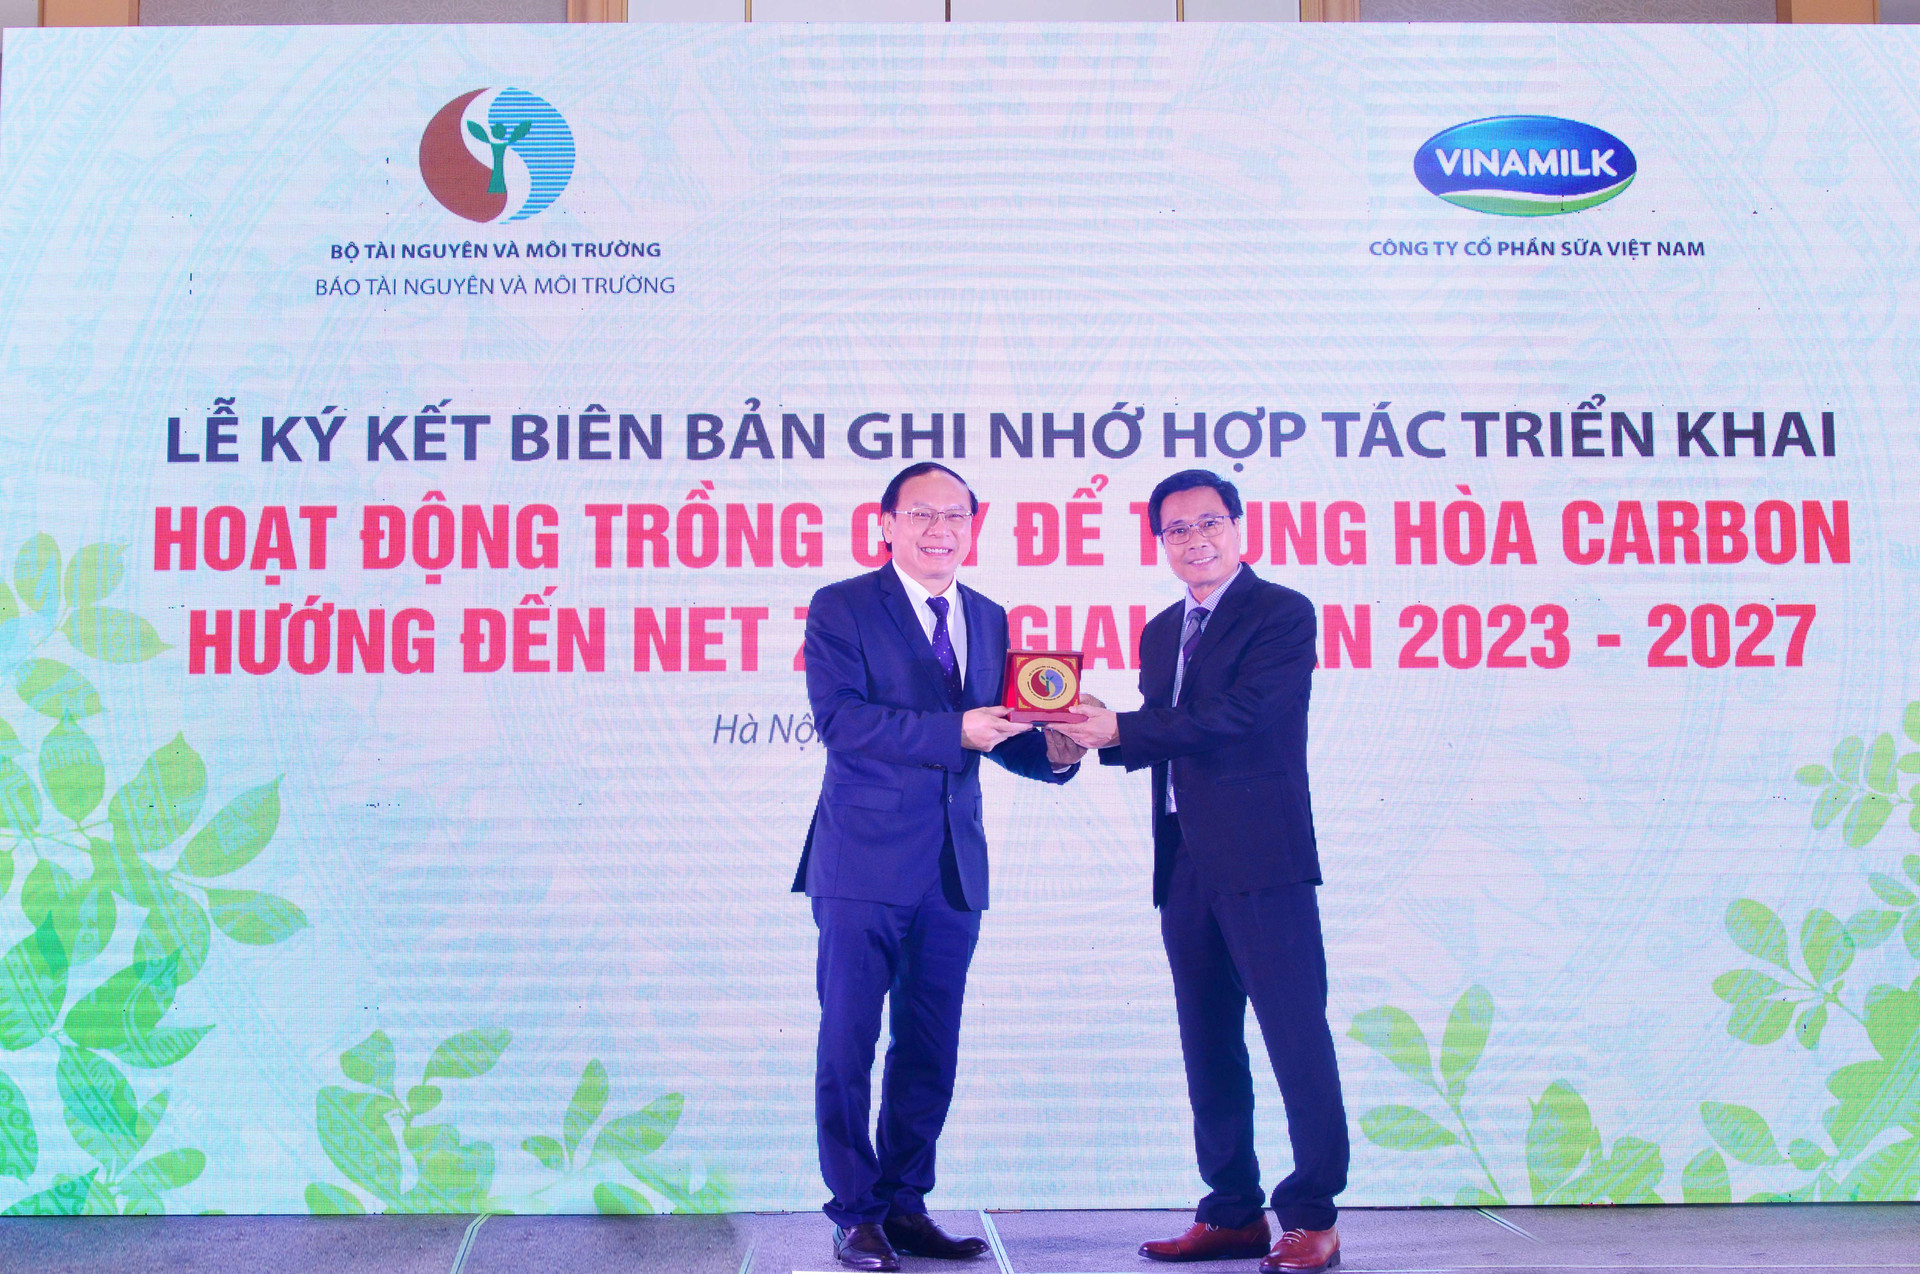 Tiên phong thực hiện cam kết của chính phủ về Net Zero 2020, Vinamilk dành 15 tỷ đồng trồng cây trung hòa carbon - Ảnh 6.